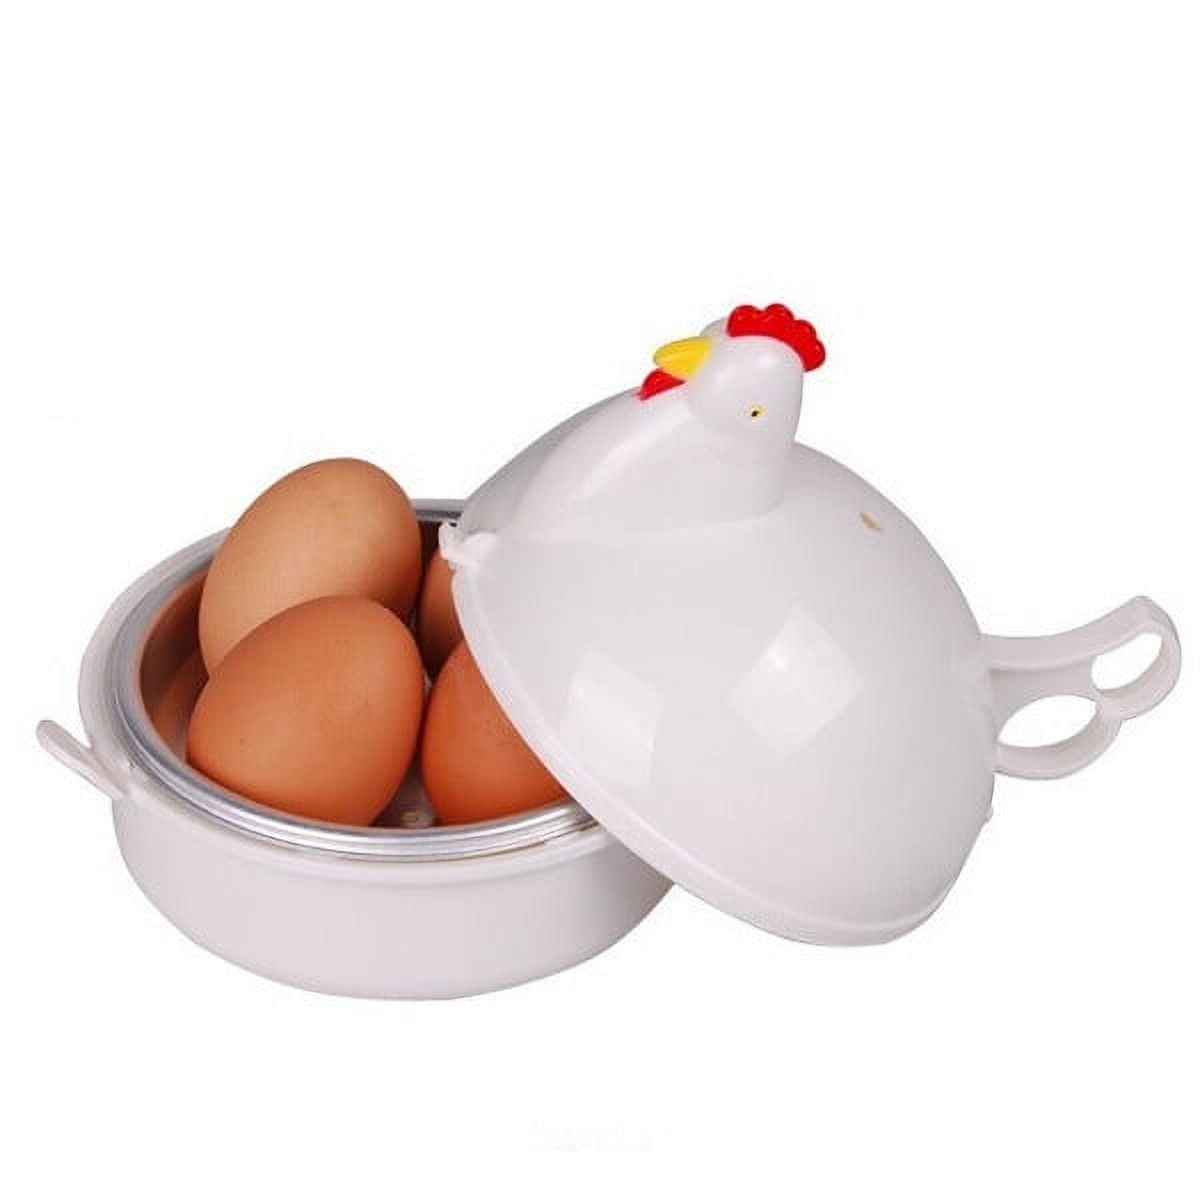 Microwave Egg Poacher, 2 Cavity Edible Silicone Drain Egg Boiler